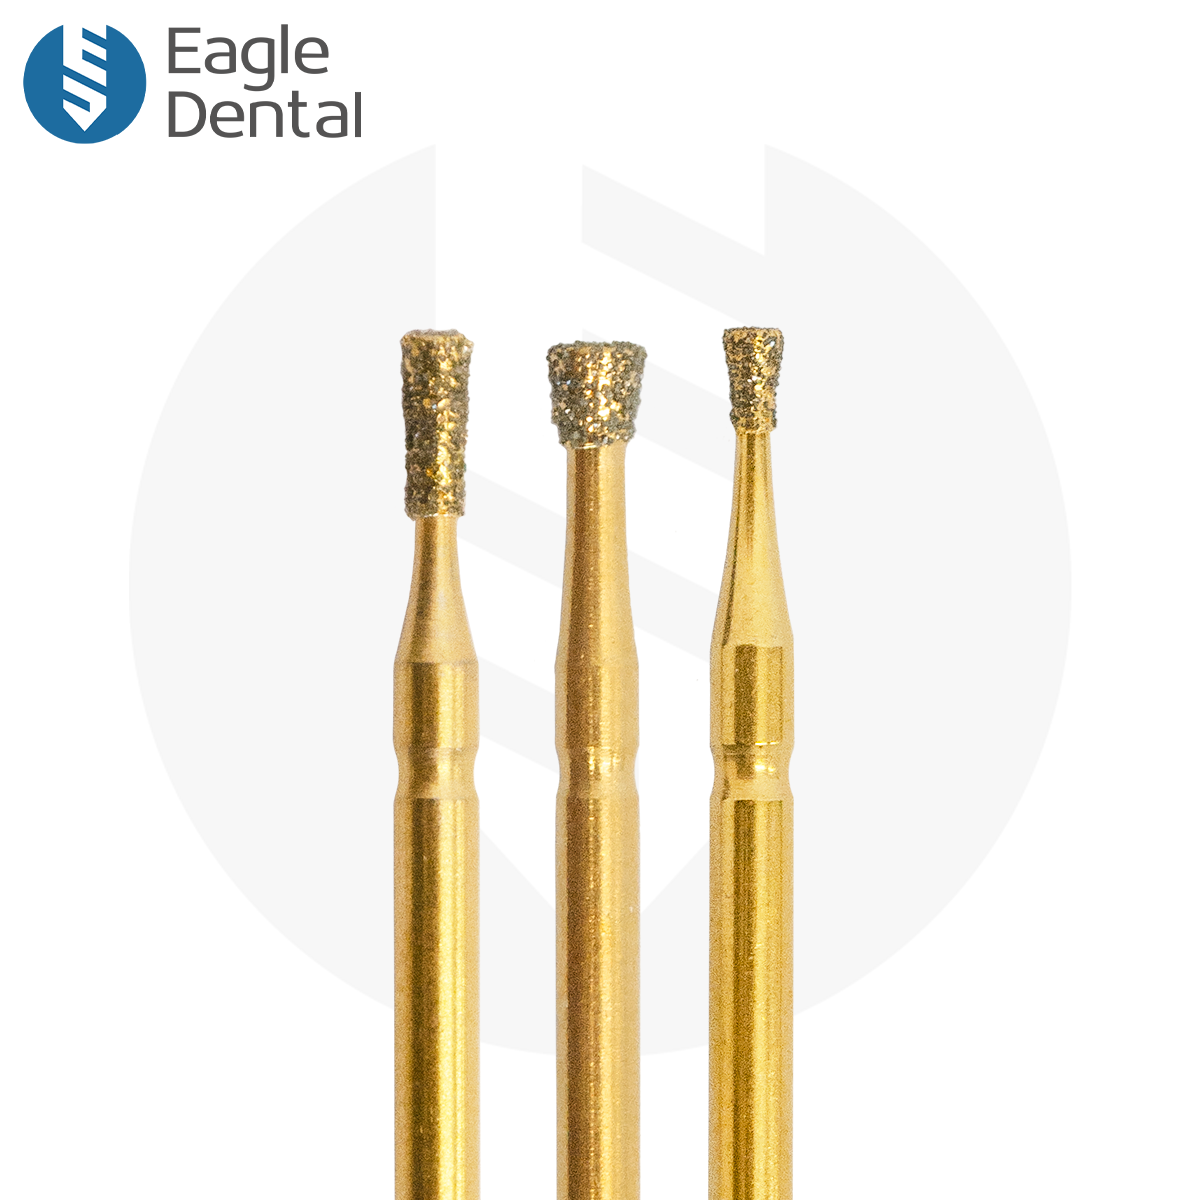 Inverted cone gold burs - Eagle Dental – Eagle Dental Burs